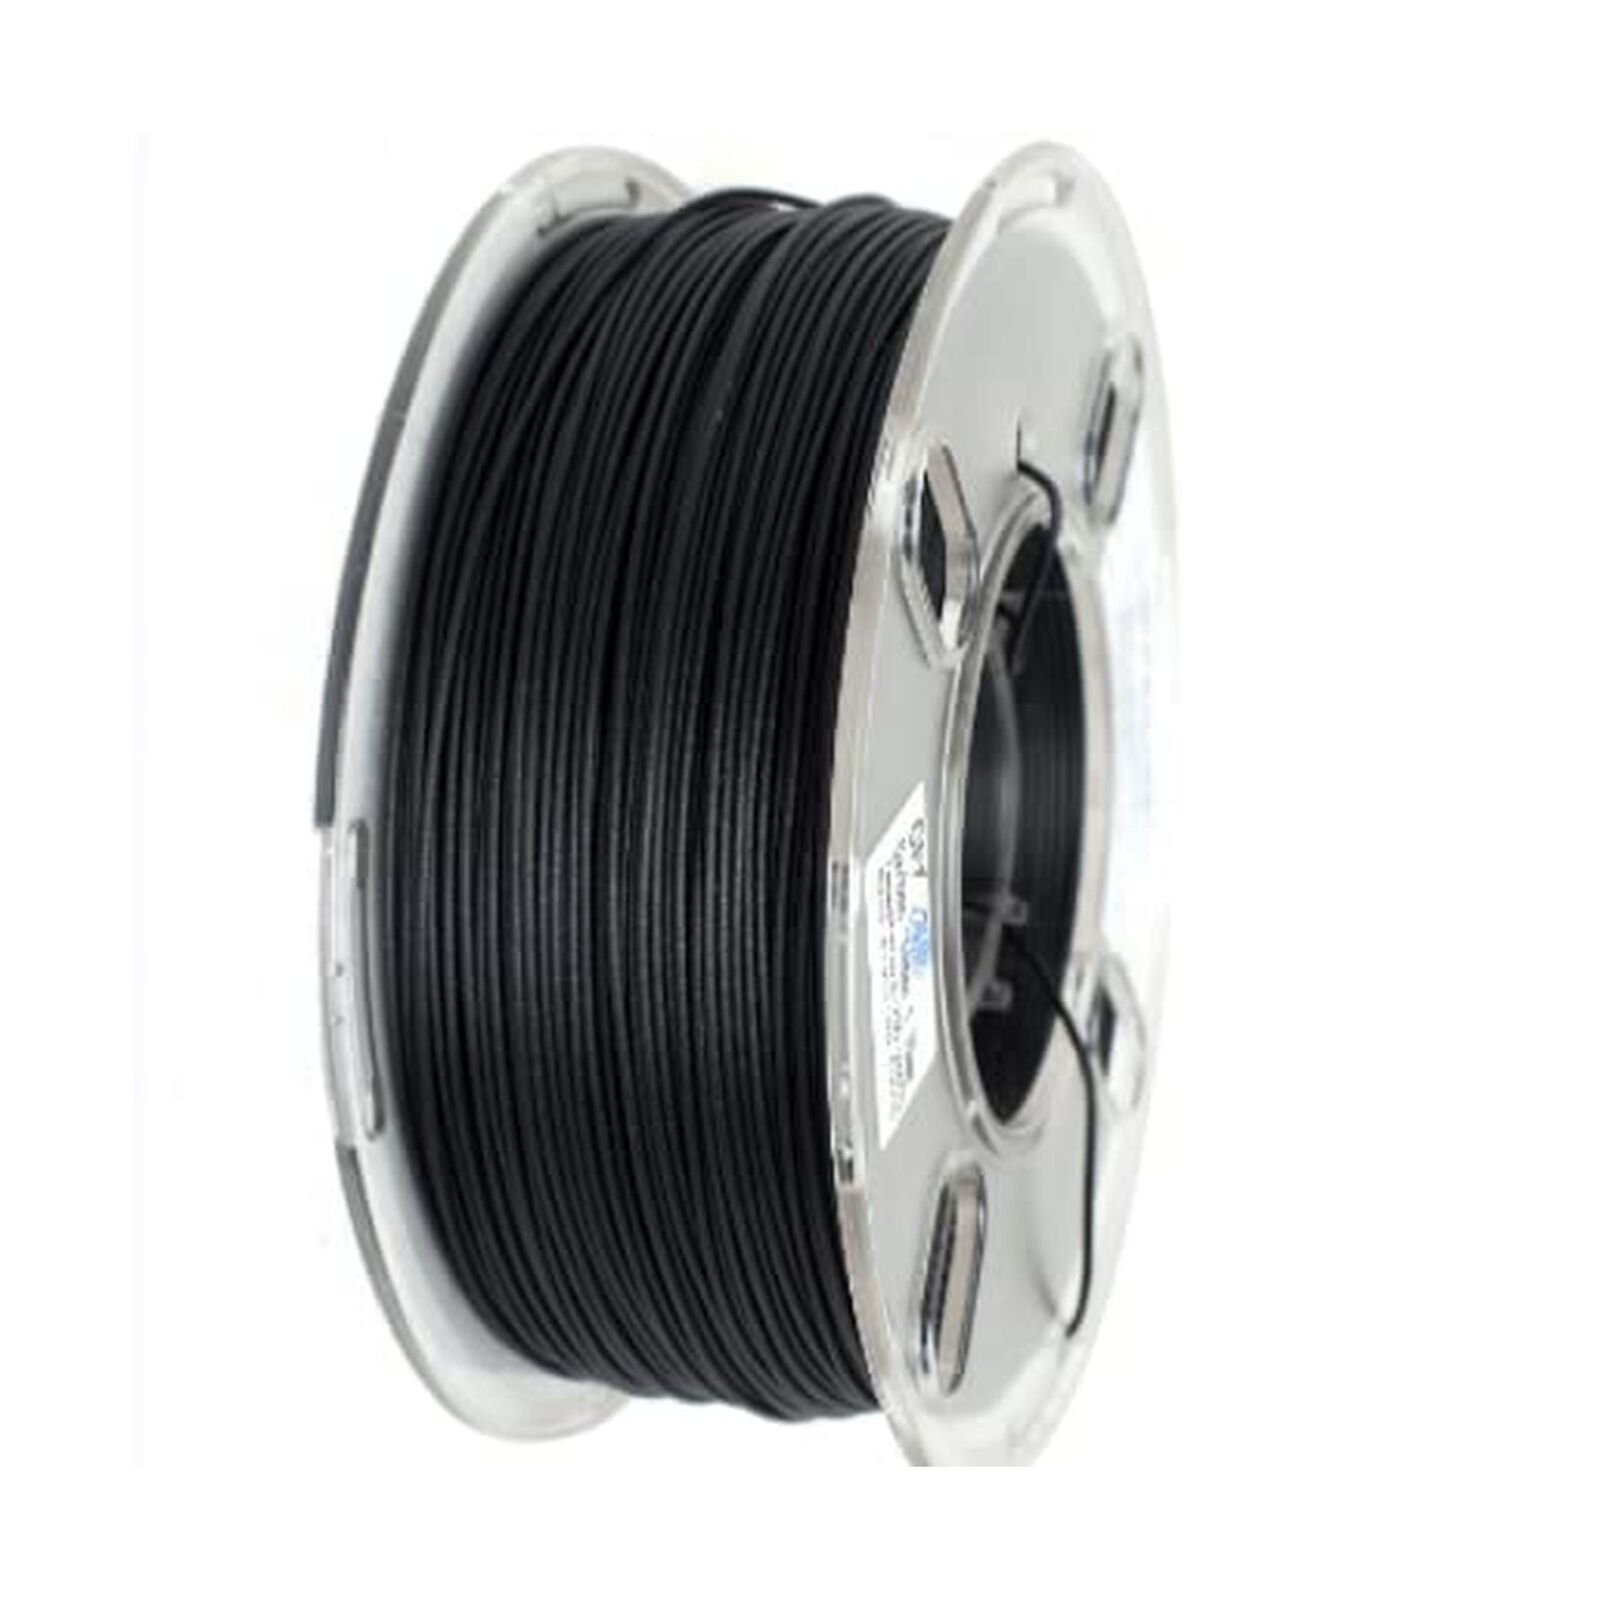 PRILINE Carbon Fiber ASA 3D Printing 3D Printer Filament, 1.75mm 1kg Spool, B...